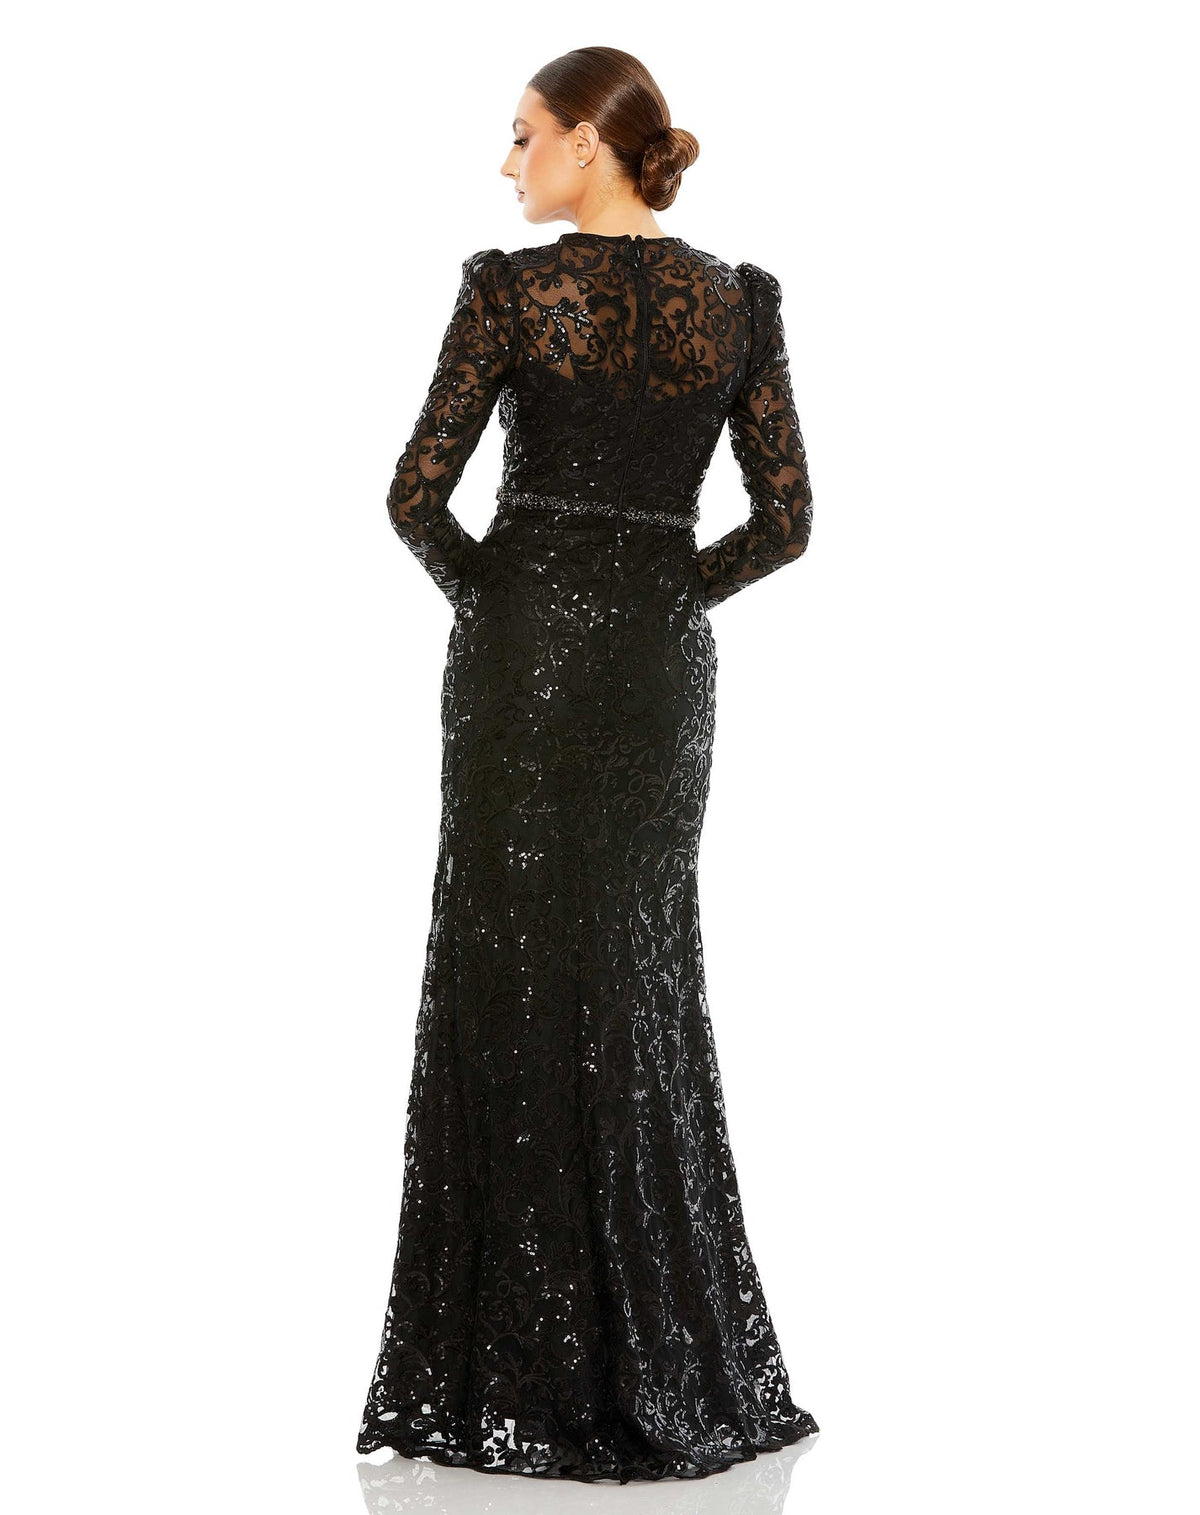 High neck embellished modest gown - Black